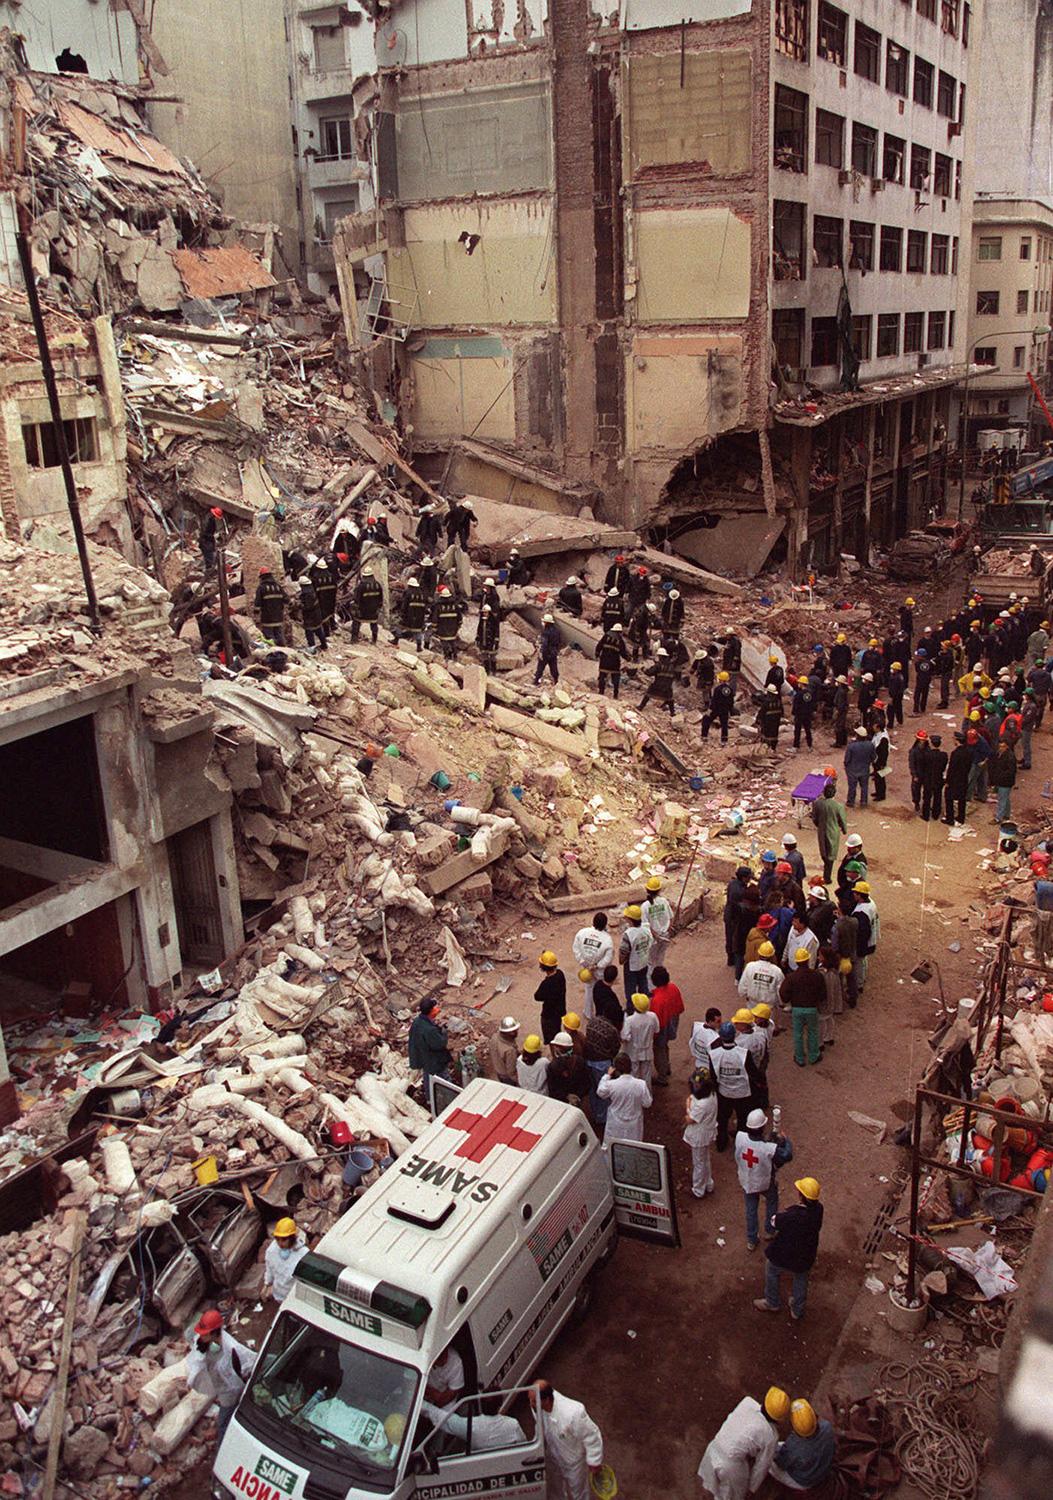 85 människor dödades och 300 skadades i attacken mot judiska församlingen i Buenos Aires 1994 – det värsta bombdådet i Argentinas historia.